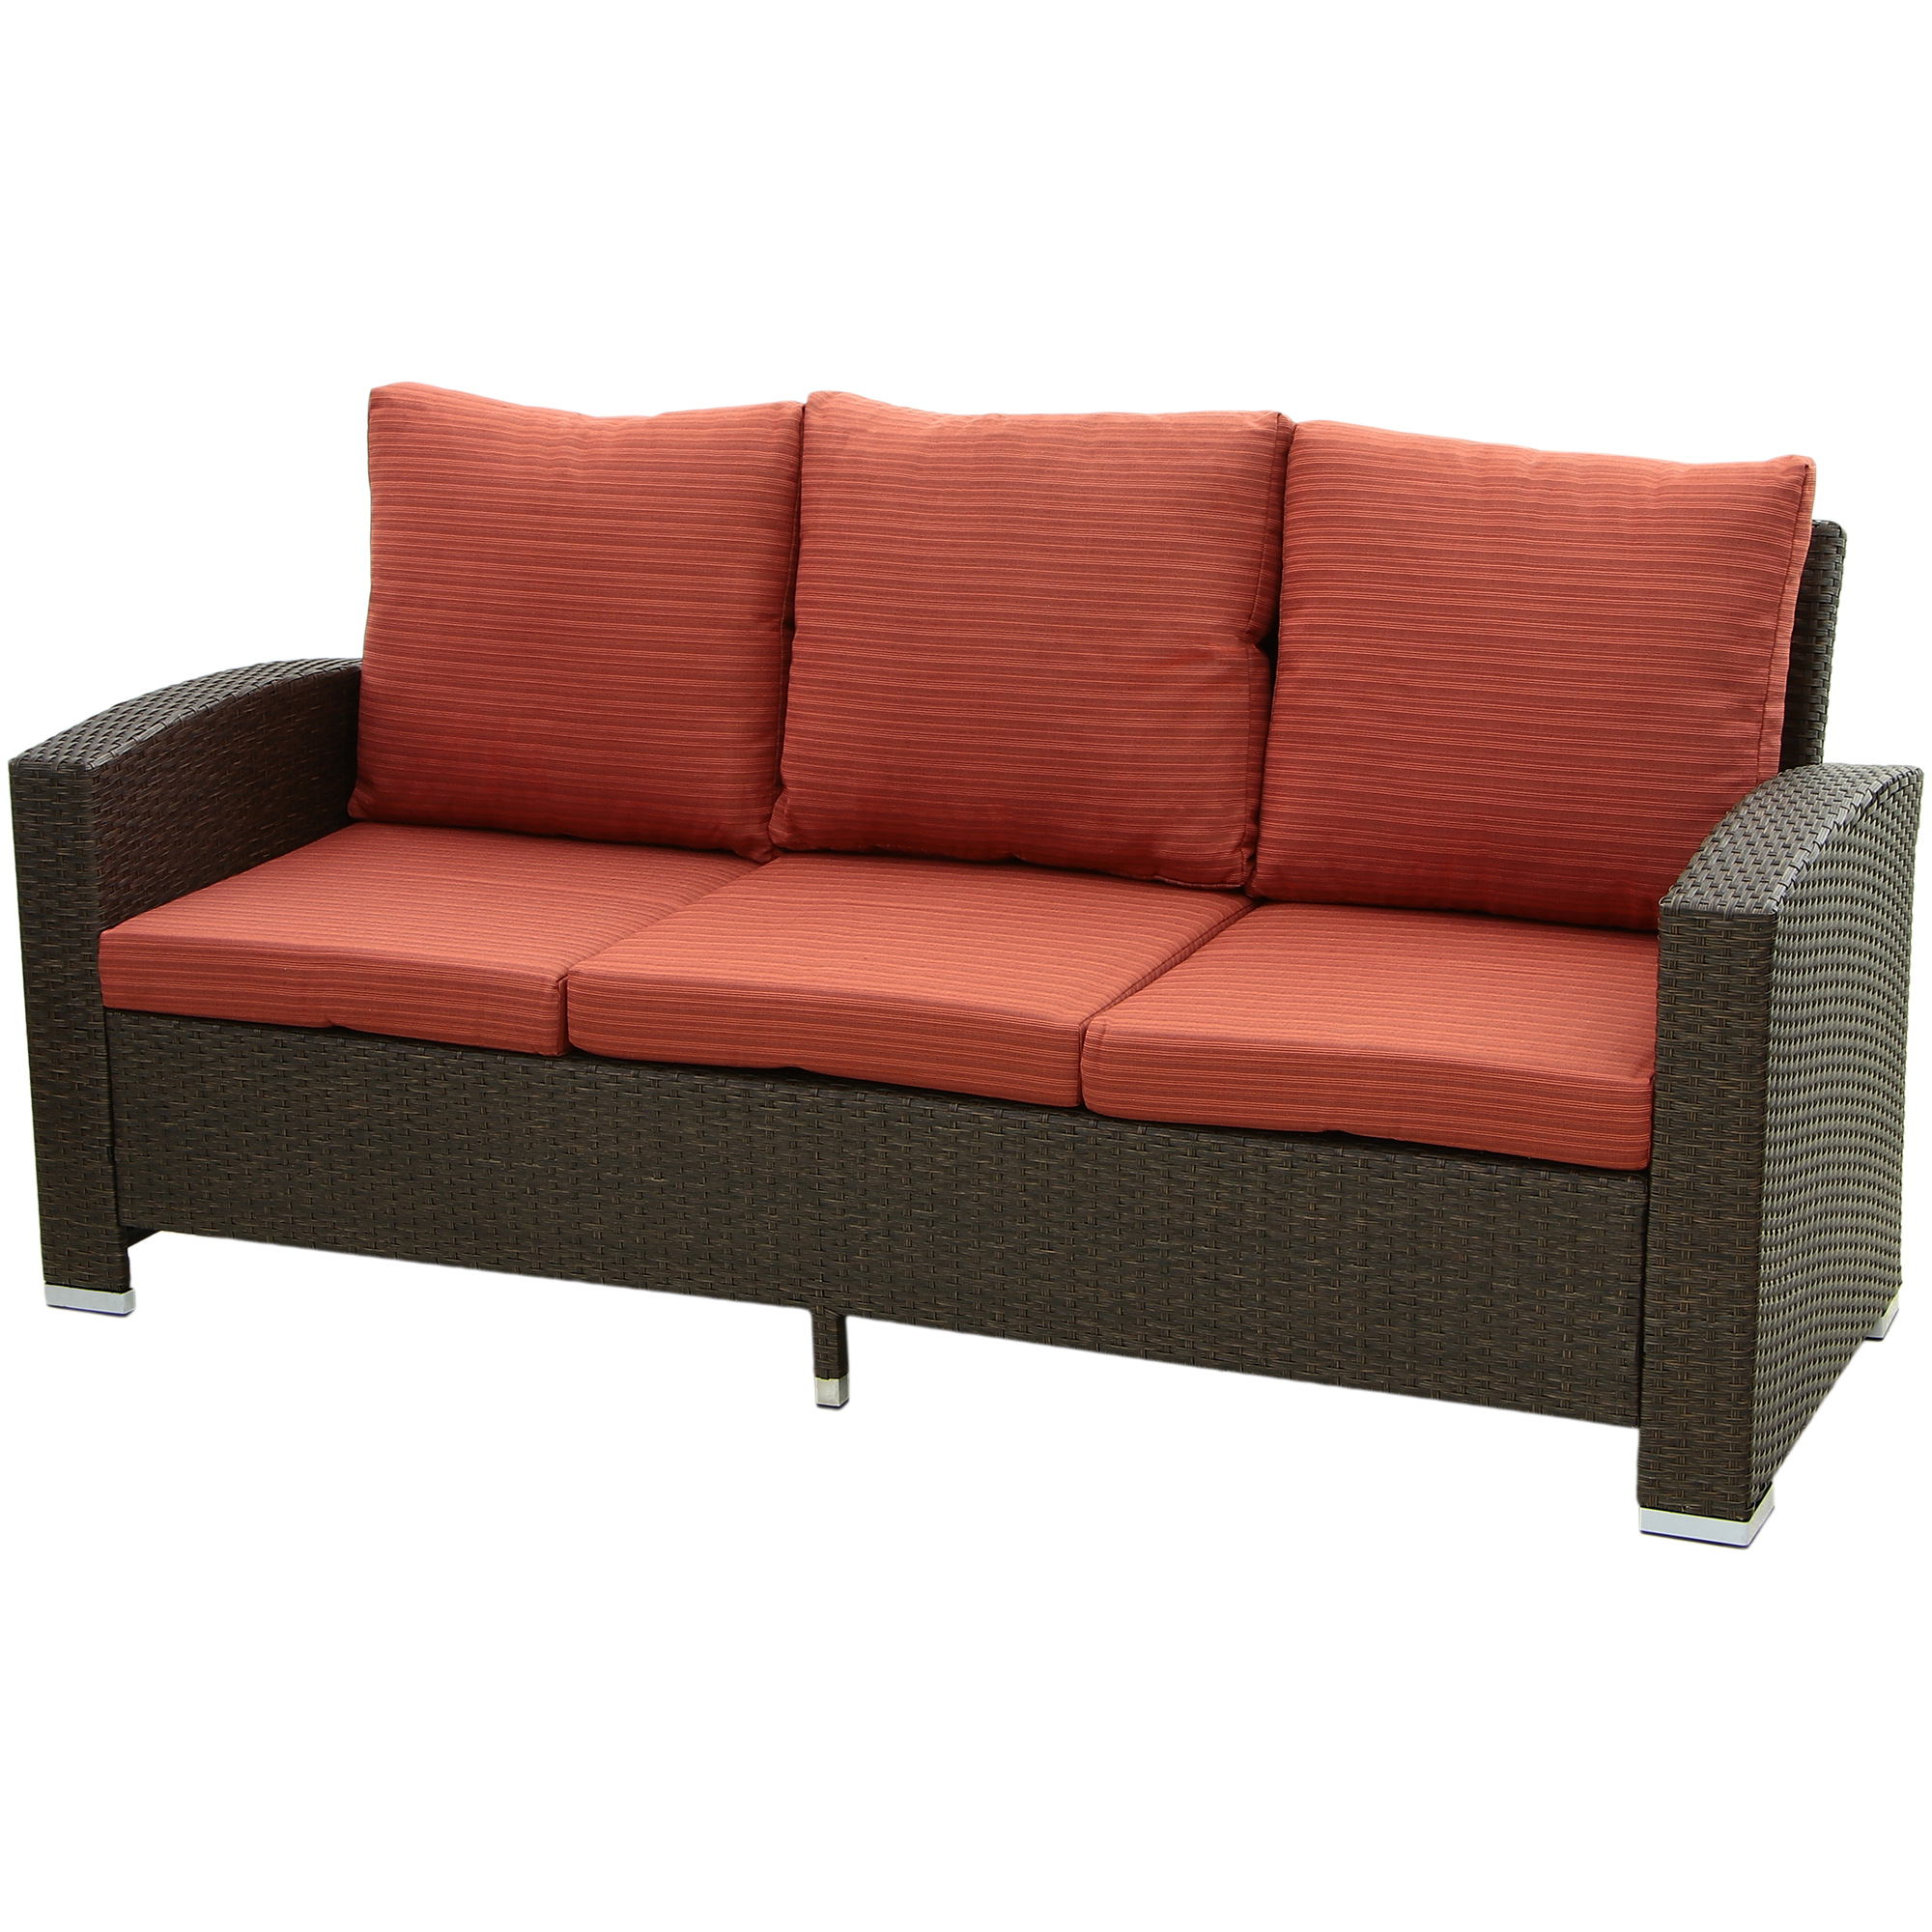 Комплект мебели Obt 5 предметов, цвет коричневый, размер 180х82х81 см - фото 2